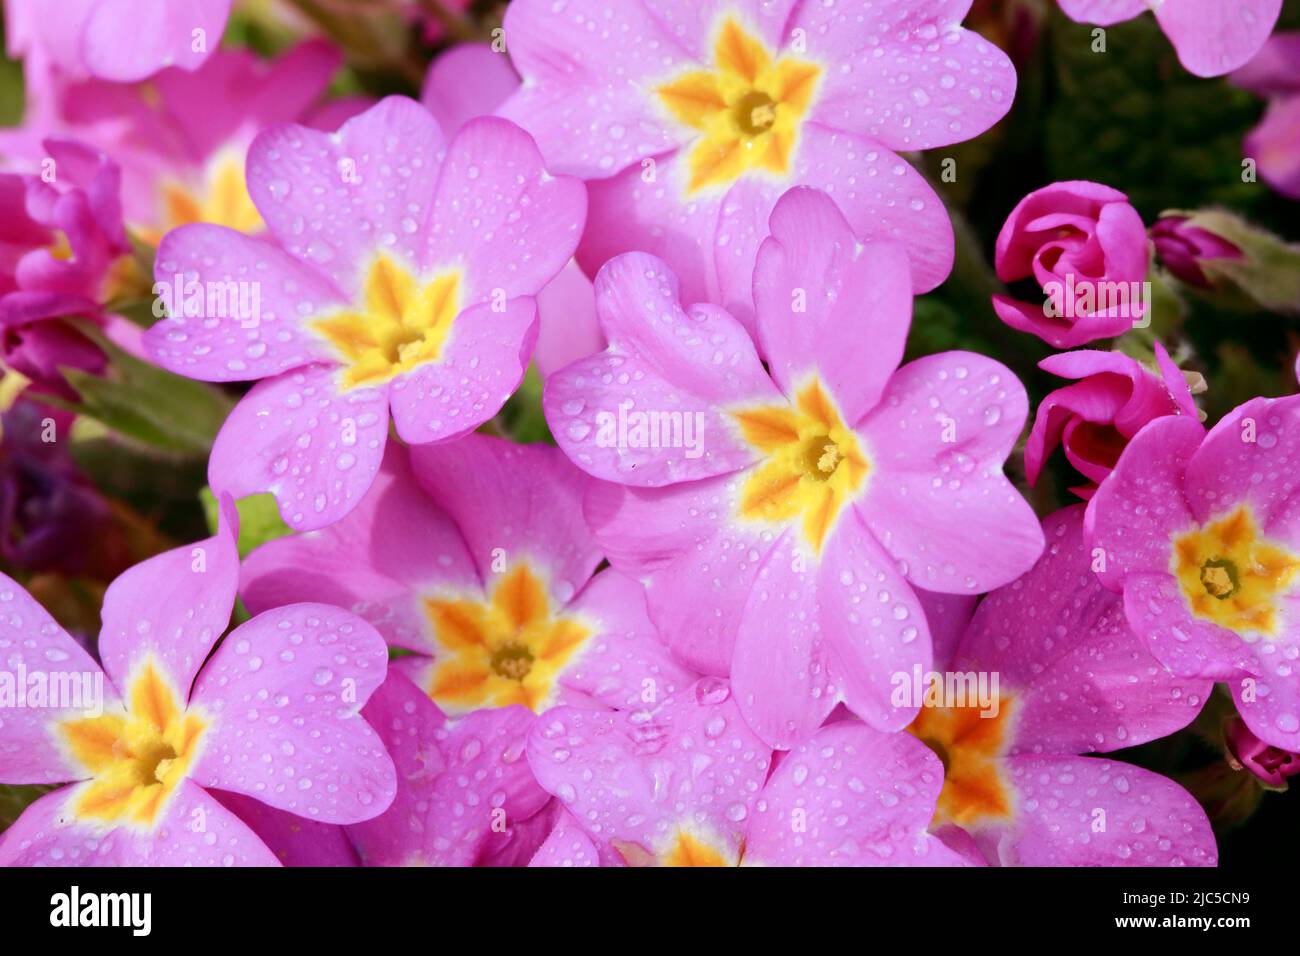 Nahaufnahme von mit Regentropfen bedeckten rosa lila Primel Blumen im Frühling, Schweiz *** Local Caption ***  Flower, flowers, sea of flowers, detail Stock Photo